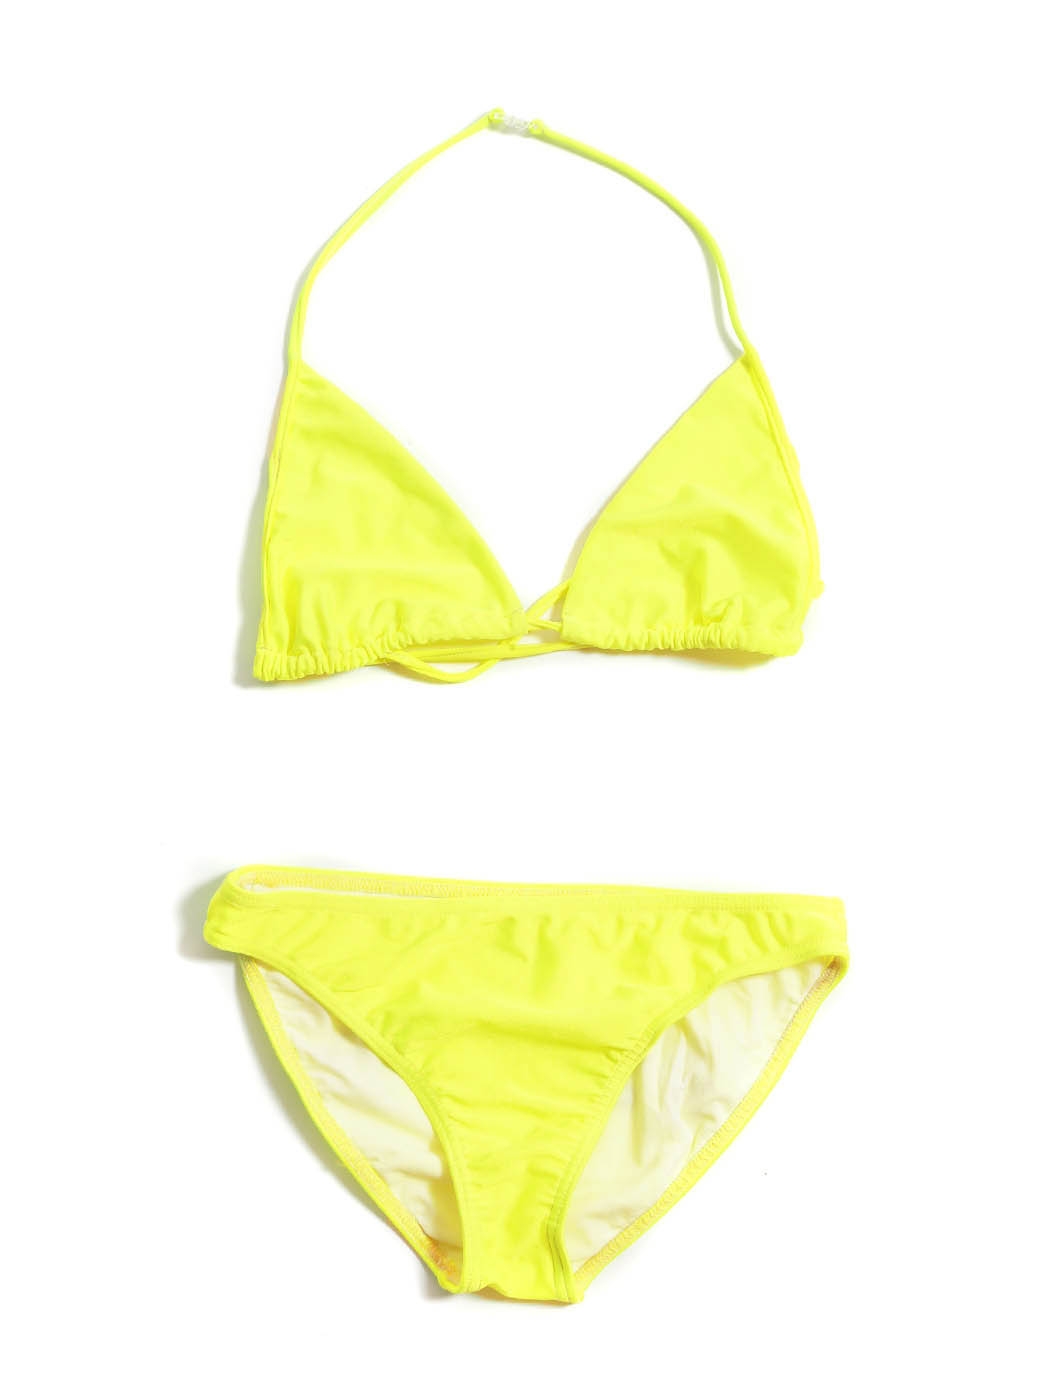 Boutique FILLES A PAPA Maillot de bain deux pièces bikini jaune fluo  WELCOME TO PARADISE Prix boutique 175€ Taille 34